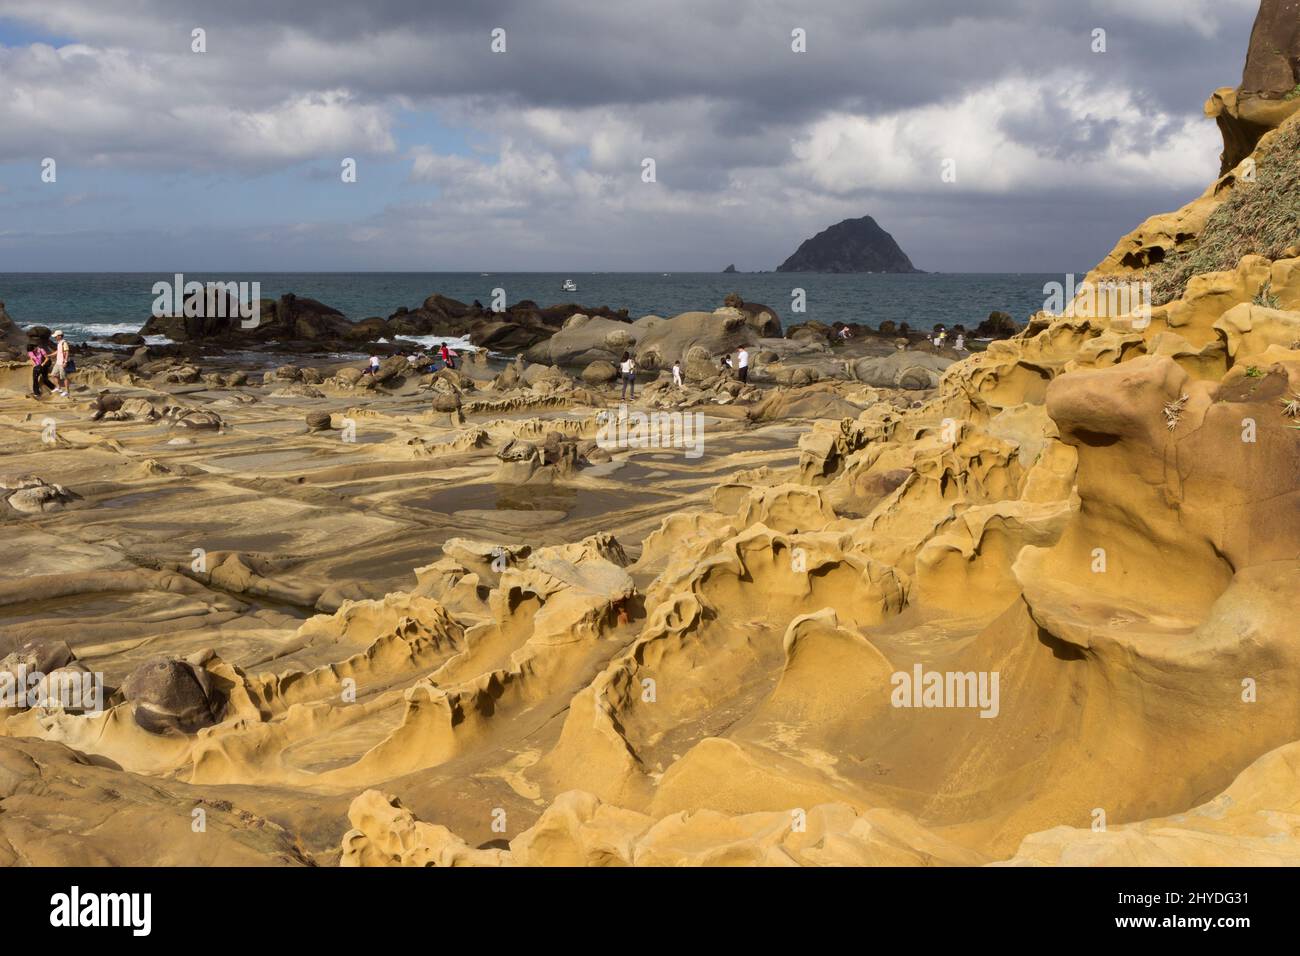 Persone al bizzarro terreno roccioso e formazioni rocciose al Parco dell'Isola di Heping (sperando) (noto anche come Parco dell'Isola della Pace) a Keelung, Taiwan. Foto Stock